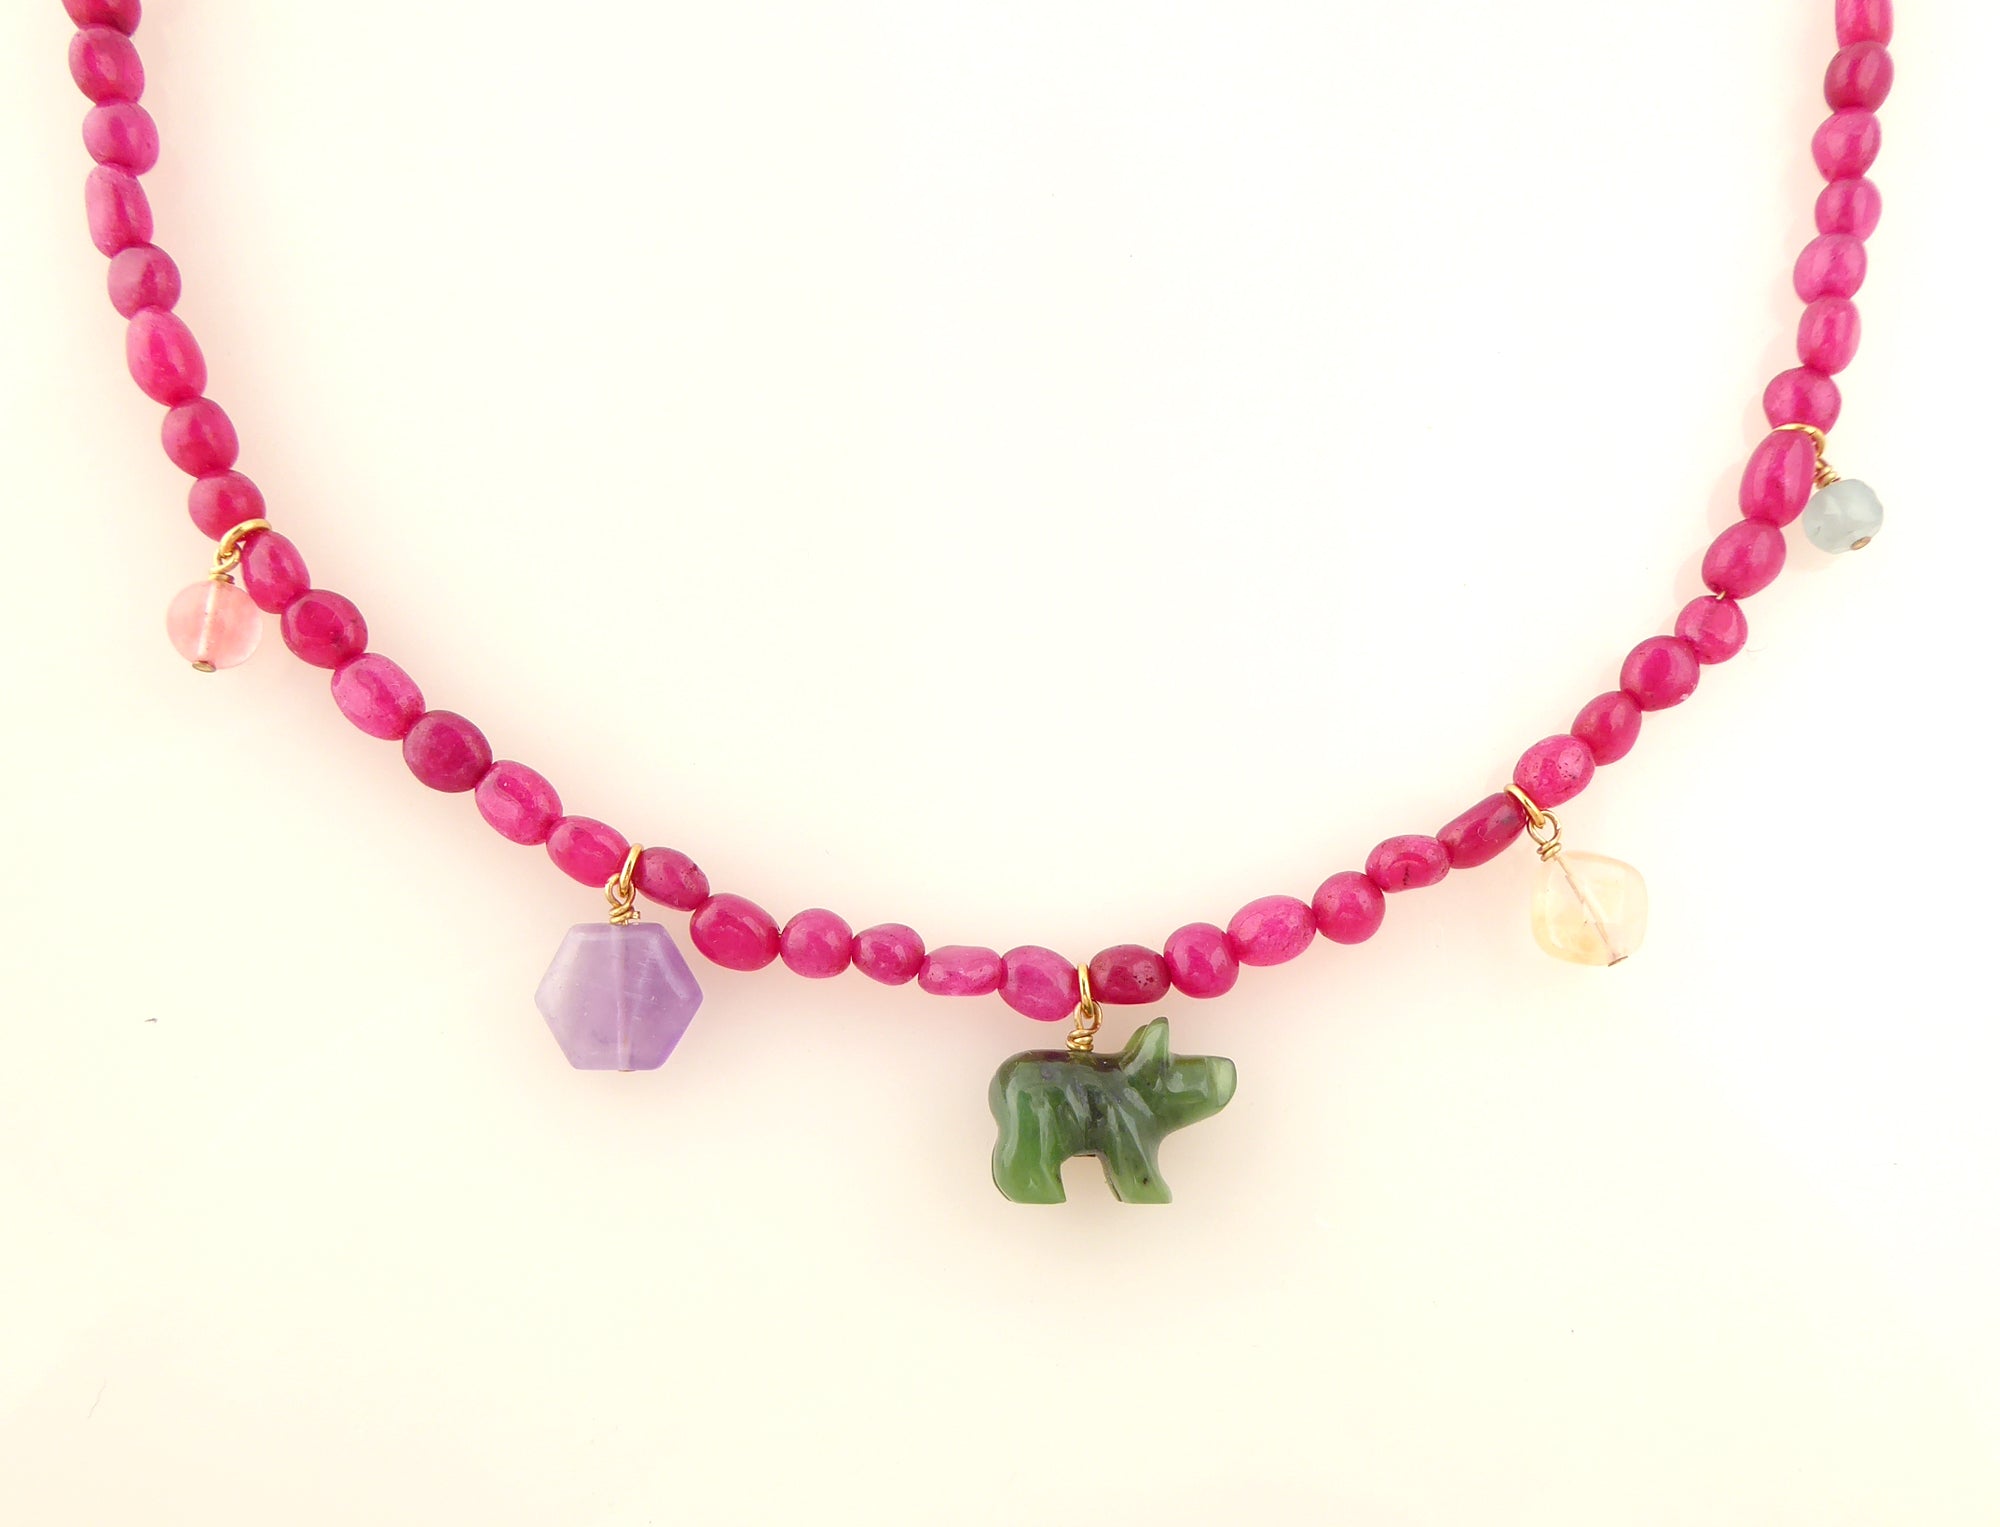 Candy stone necklace by Jenny Dayco 4